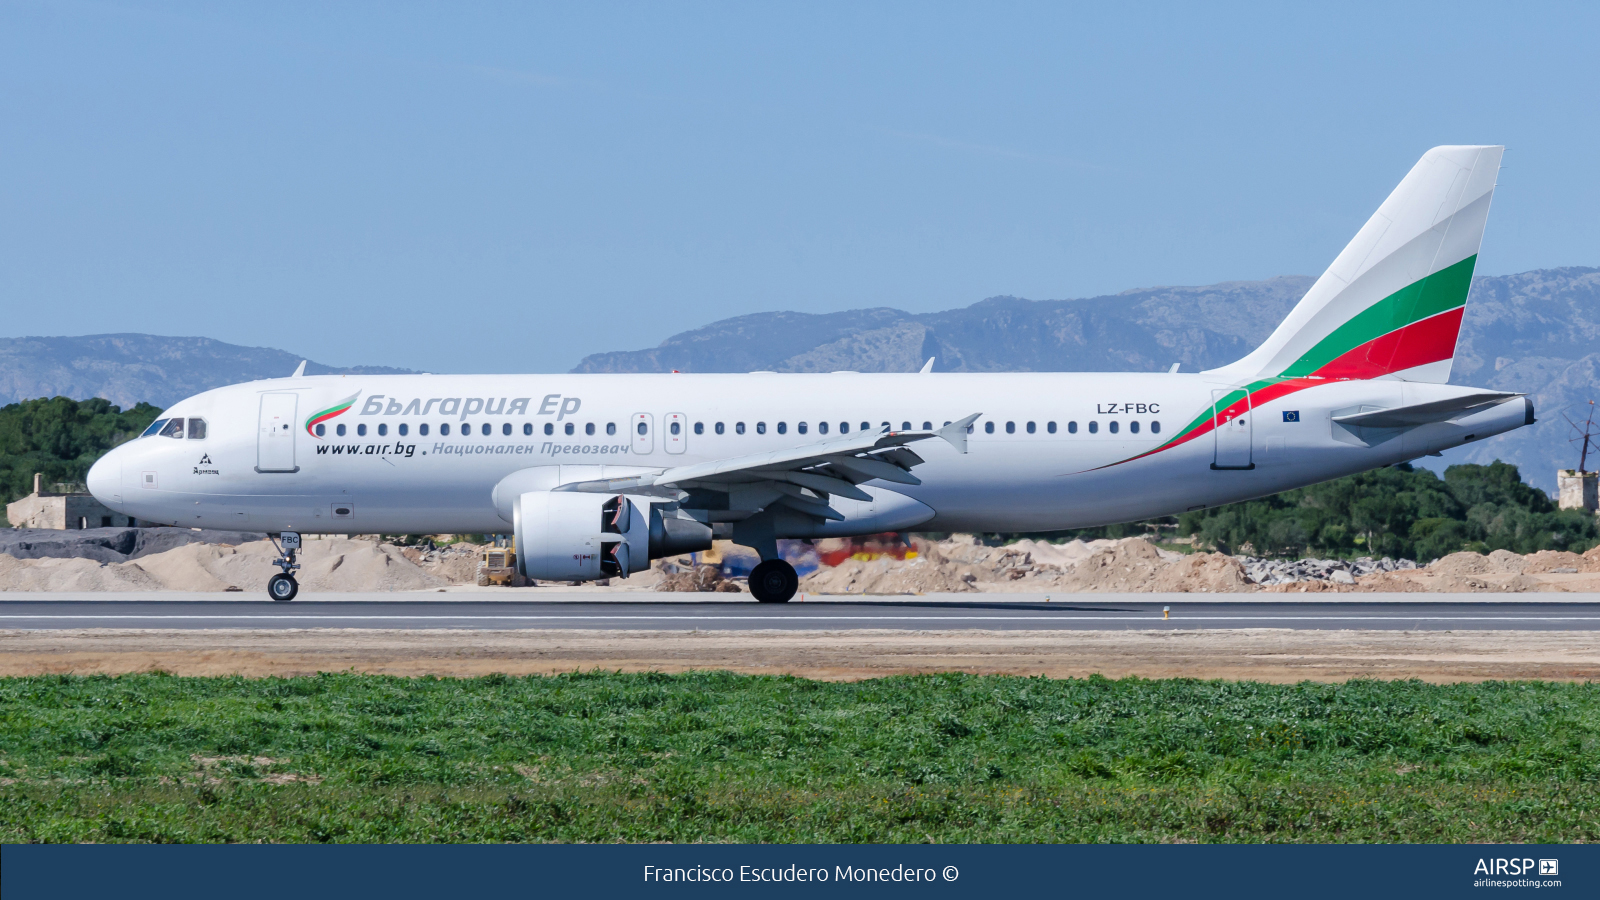 Bulgaria Air  Airbus A320  LZ-FBC